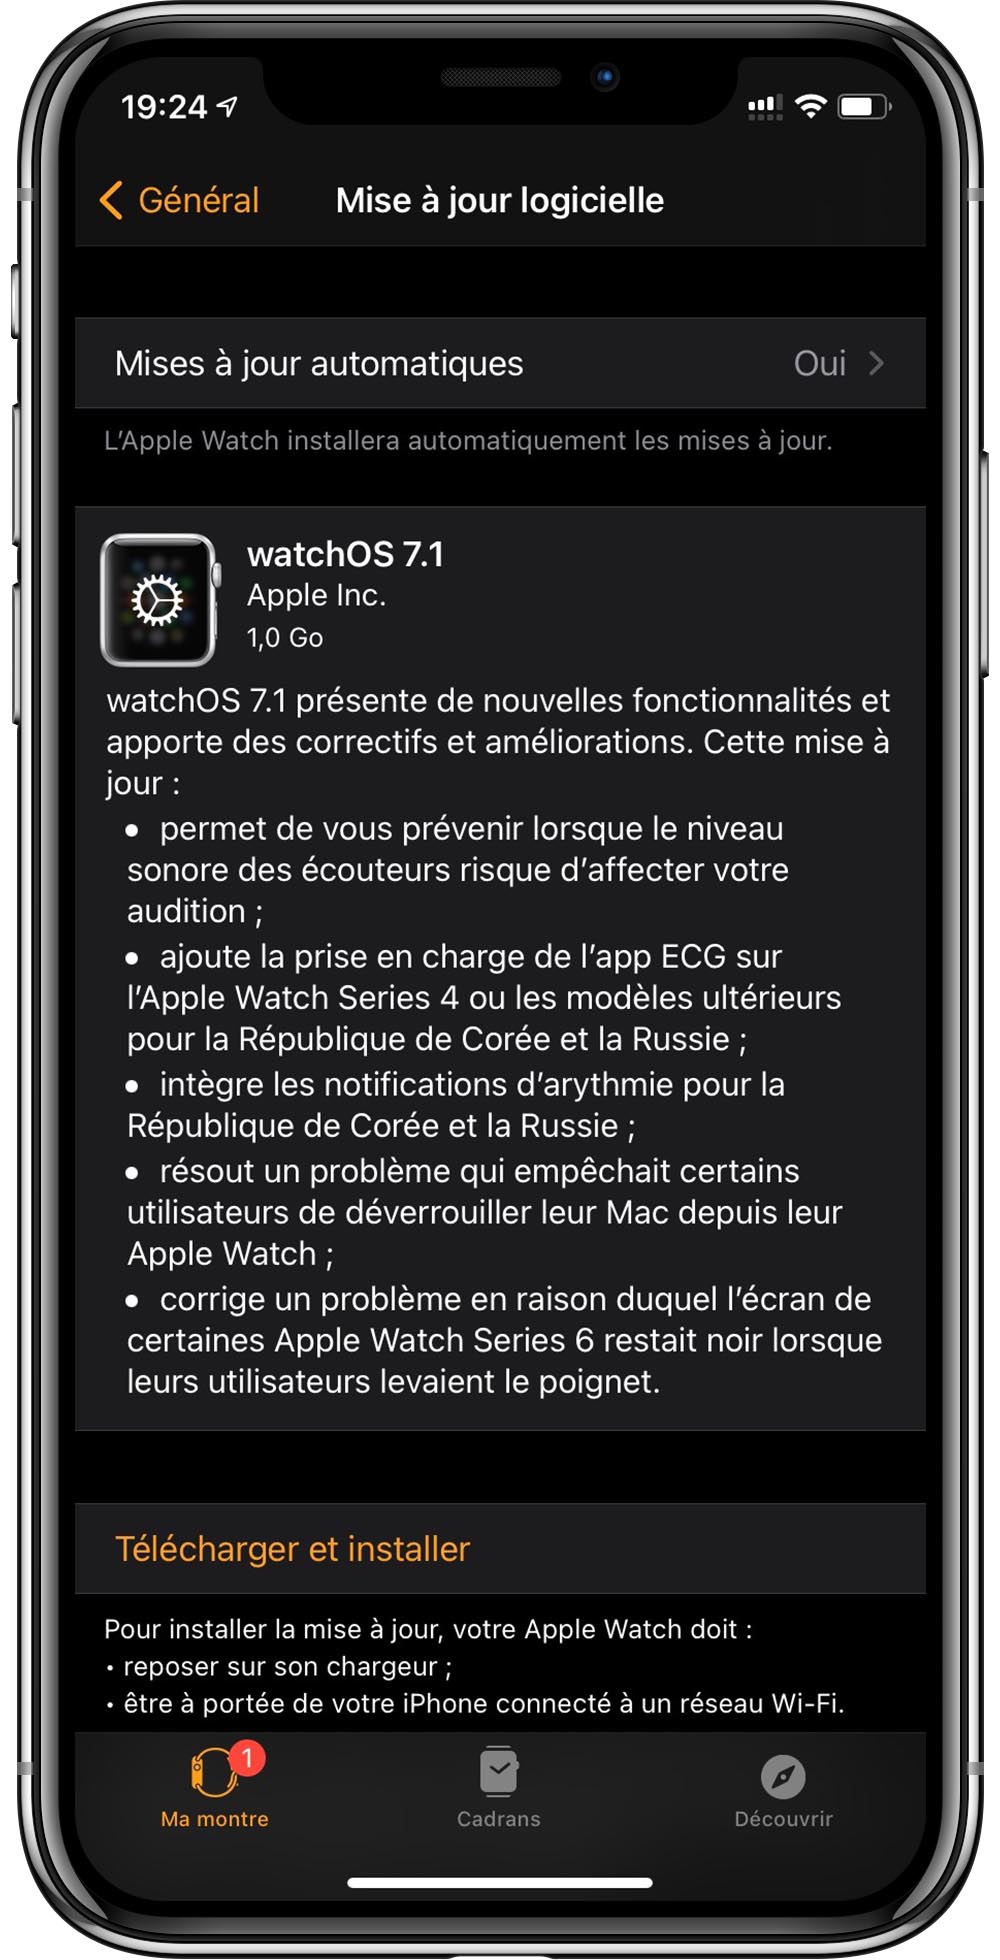 Apple phát hành watchOS 7.1 bản cập nhật sửa nhiều lỗi quan trọng như mở khóa máy Mac, cảnh báo âm thanh tai nghe, điện tâm đồ,..